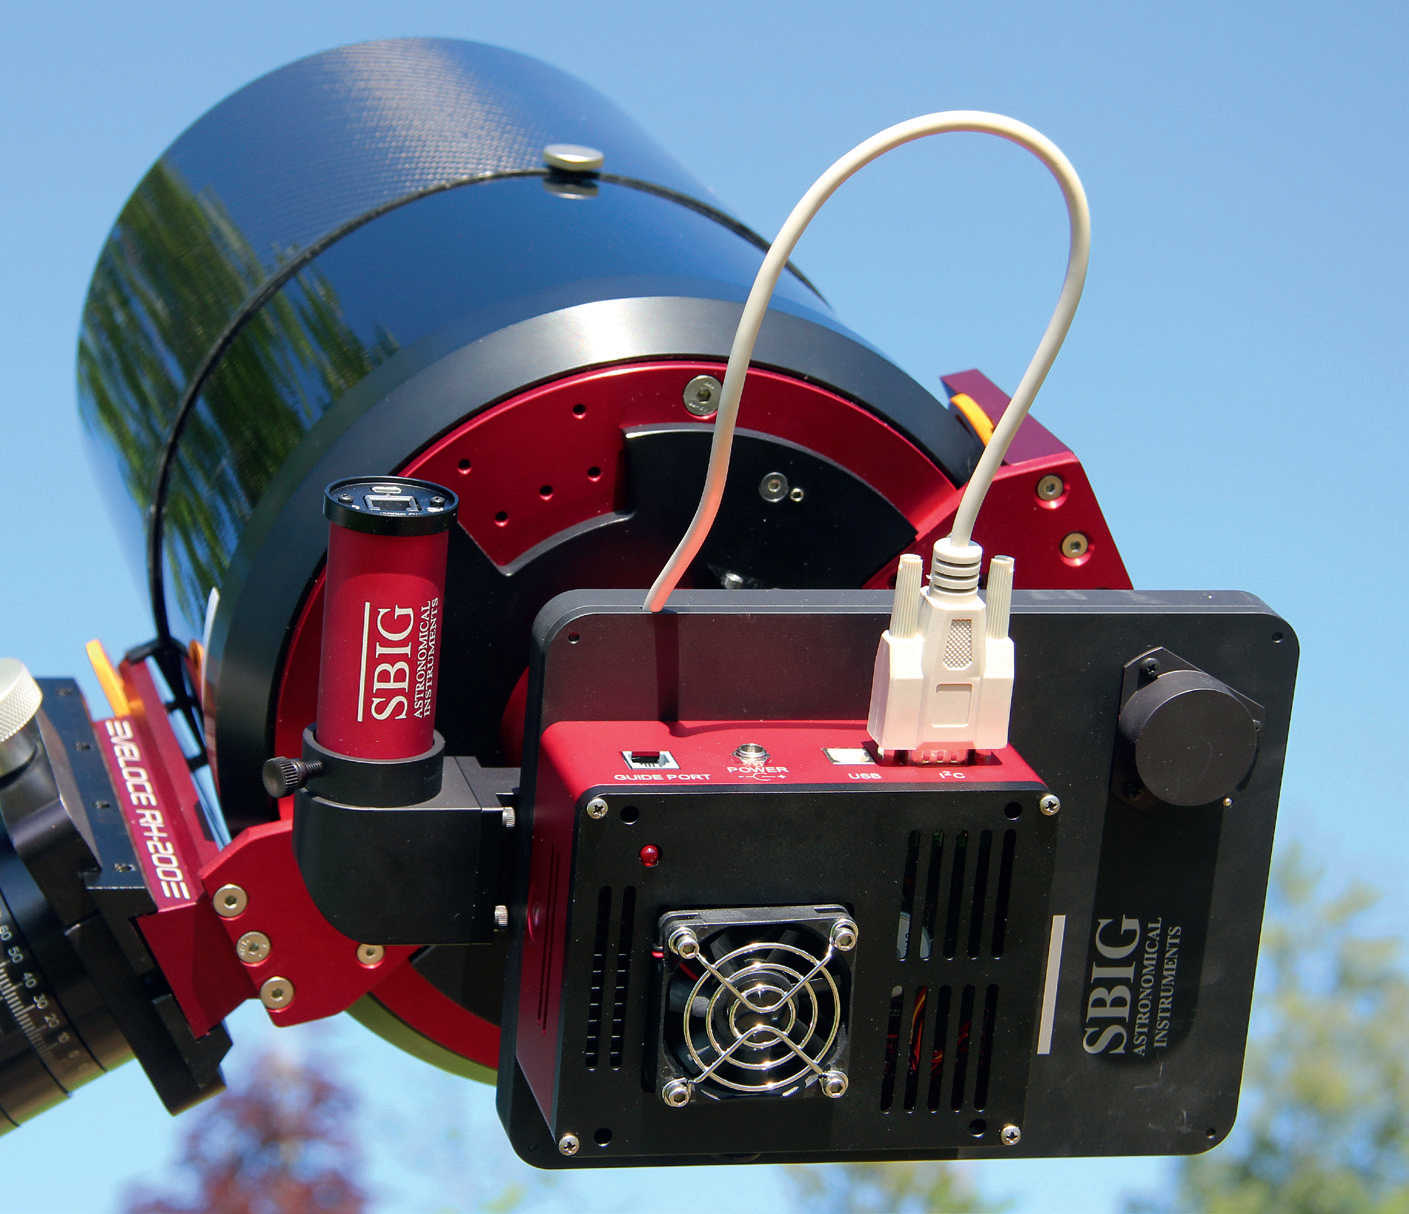 Une caméra CCD refroidie sur un astrographe : entre le tube et la caméra (boîtier rouge/noir), on voit la roue à filtres (également noire) et, à côté, une caméra de suivi ronde (rouge) reliée au chemin optique de la lunette via un Off-Axis-Guider. U. Dittler